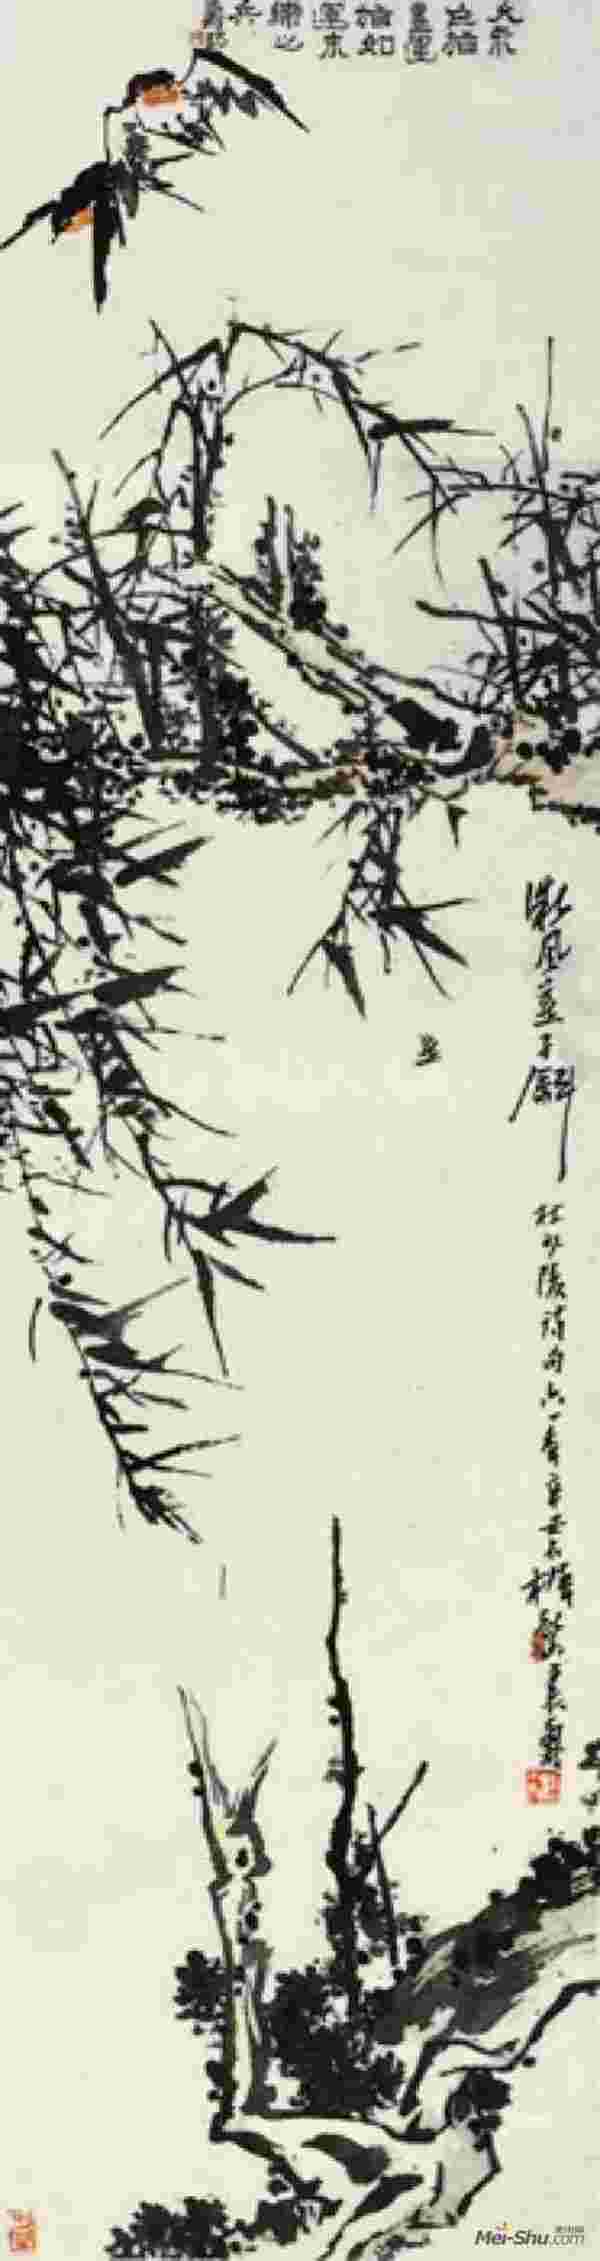 《微风燕子图》近代潘天寿纸本设色指画